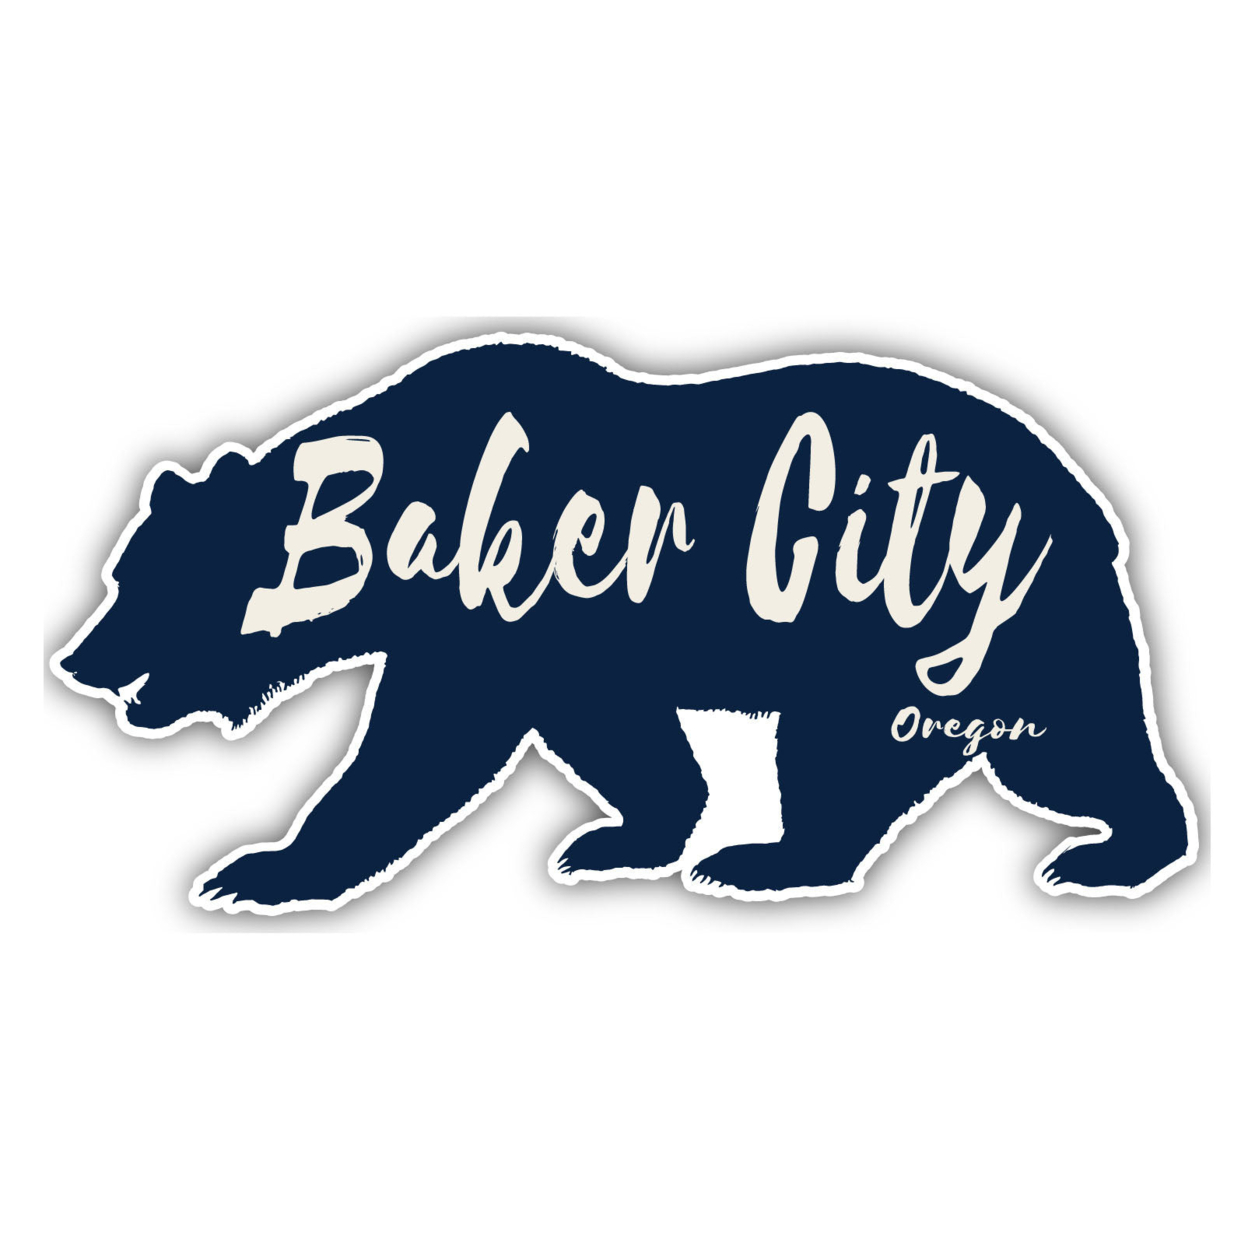 Baker City Oregon Souvenir Decorative Stickers (Choose Theme And Size) - Single Unit, 12-Inch, Tent